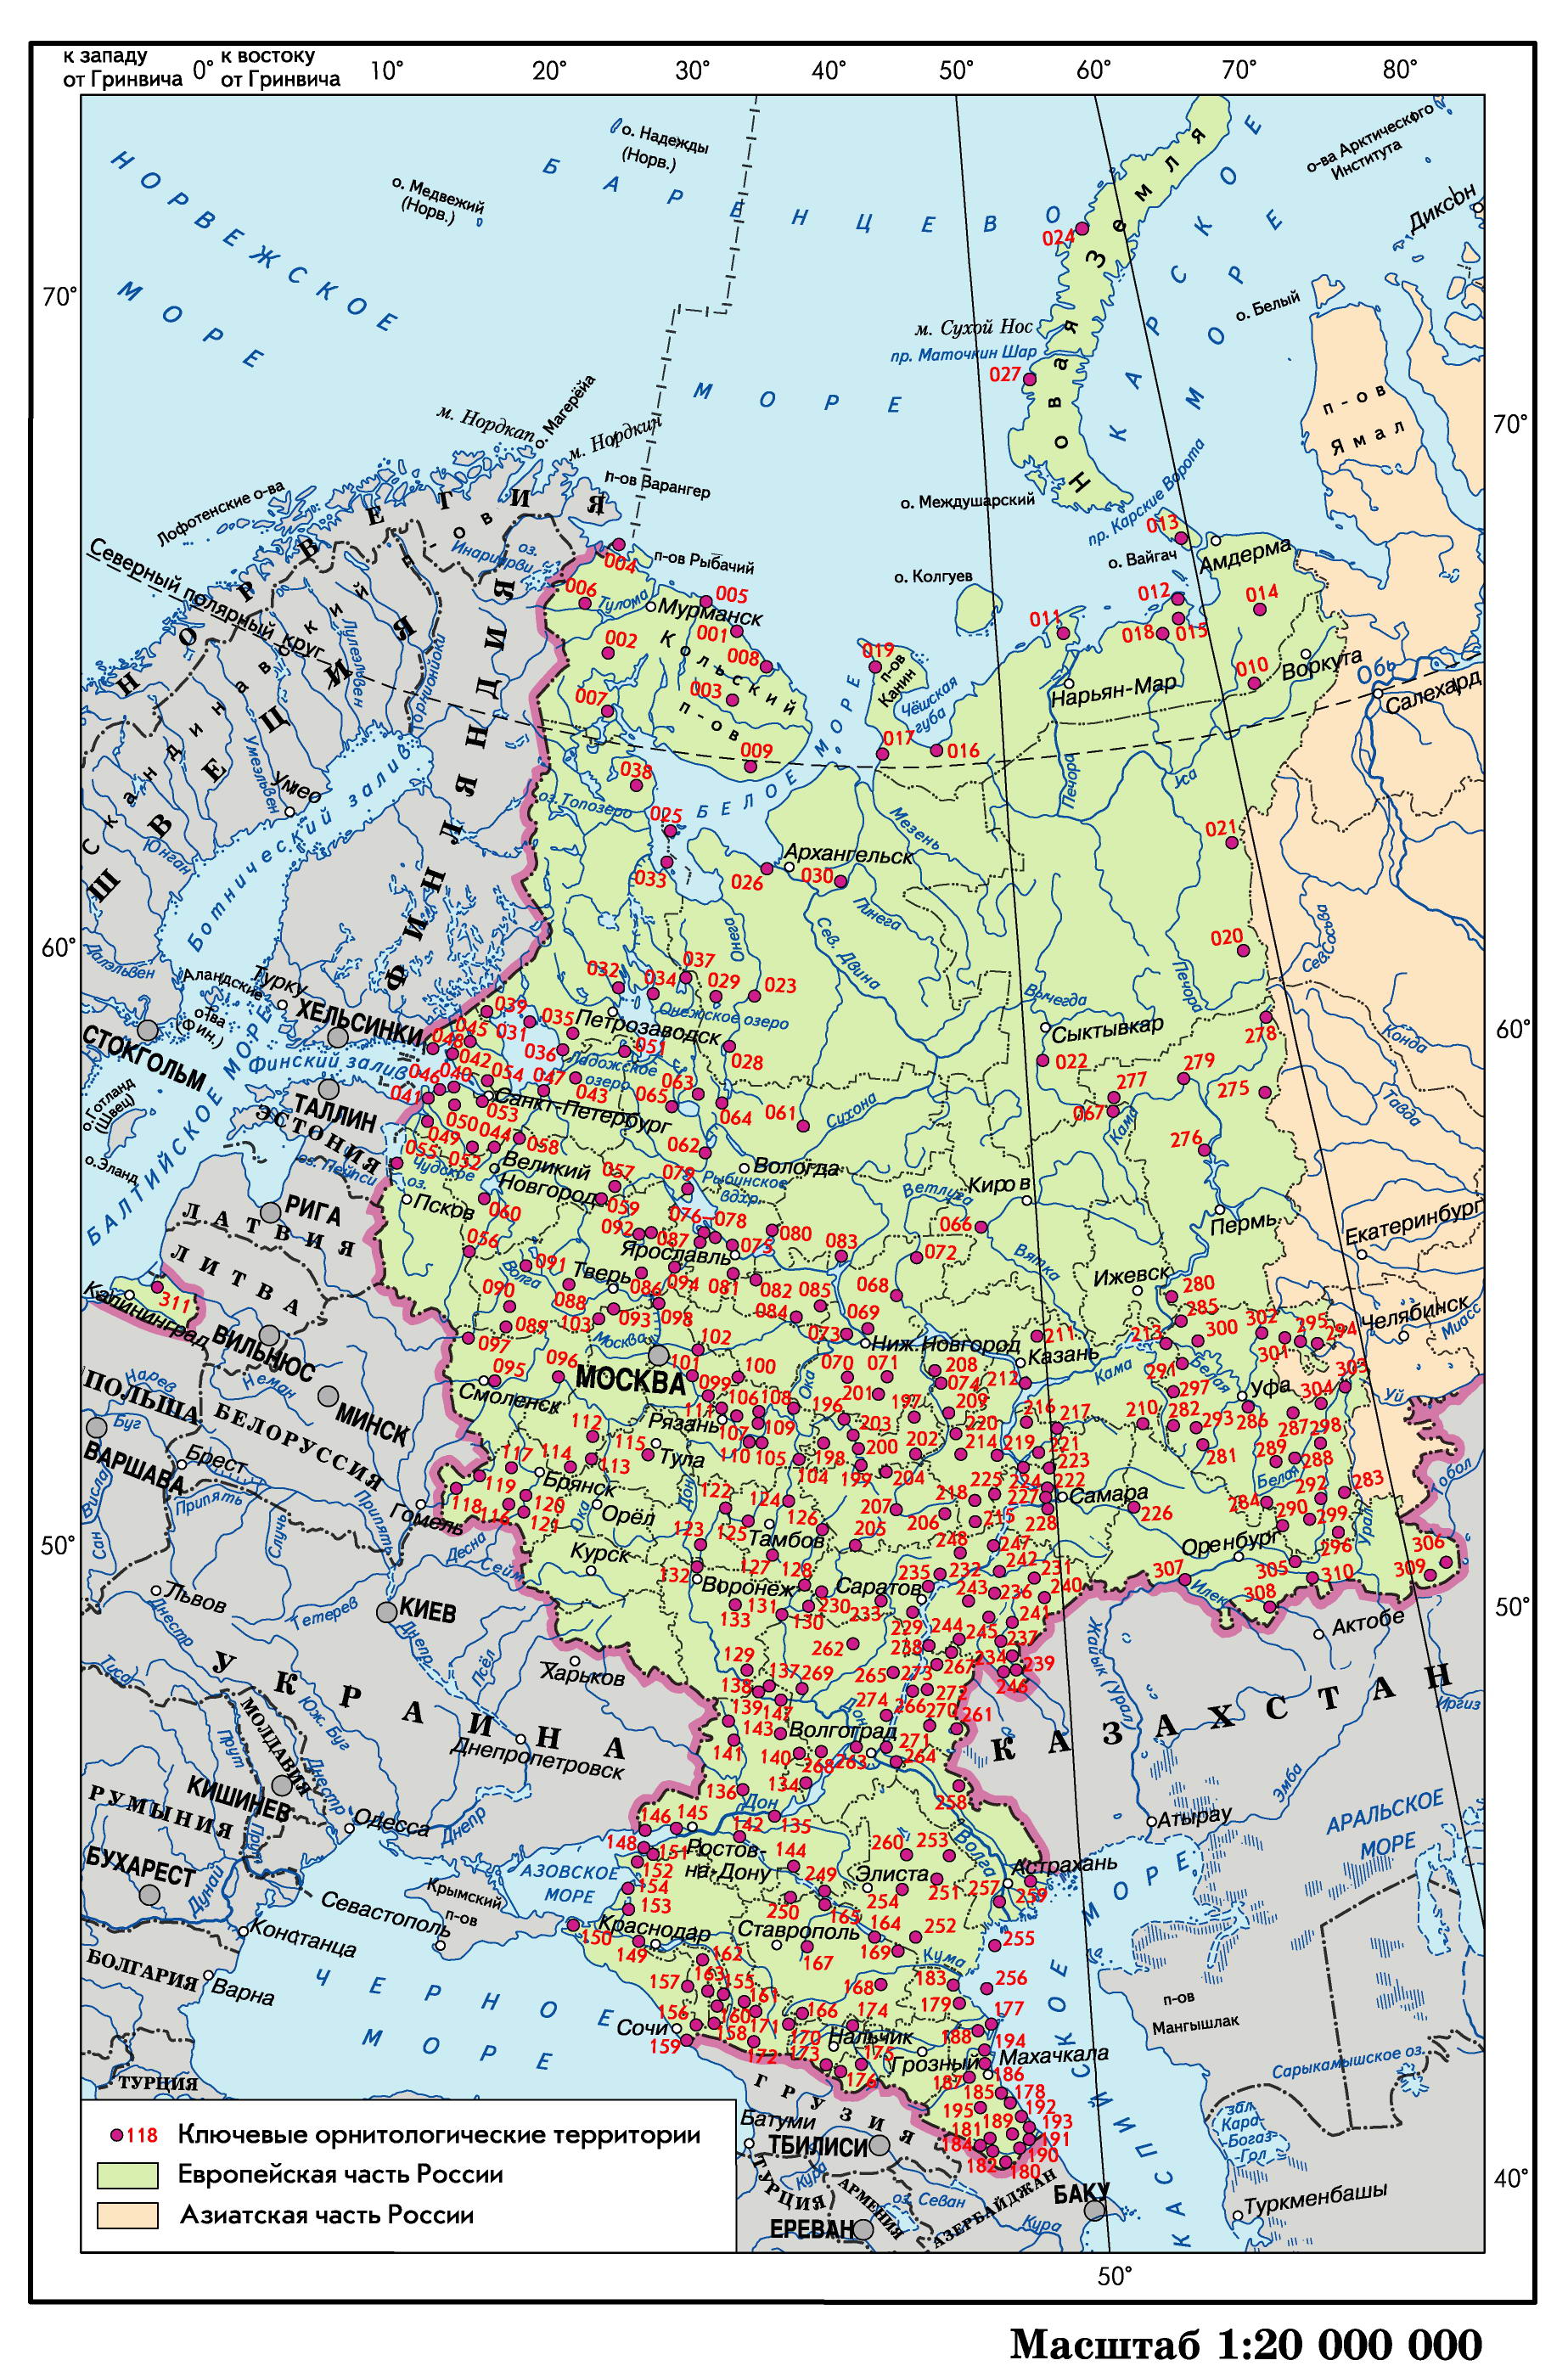 Как называется европейская часть россии. Маштаб карты европейская часть Росси. Карта европейской части России масштаб карты. Карта европей части России. Географическая карта европейской части России.